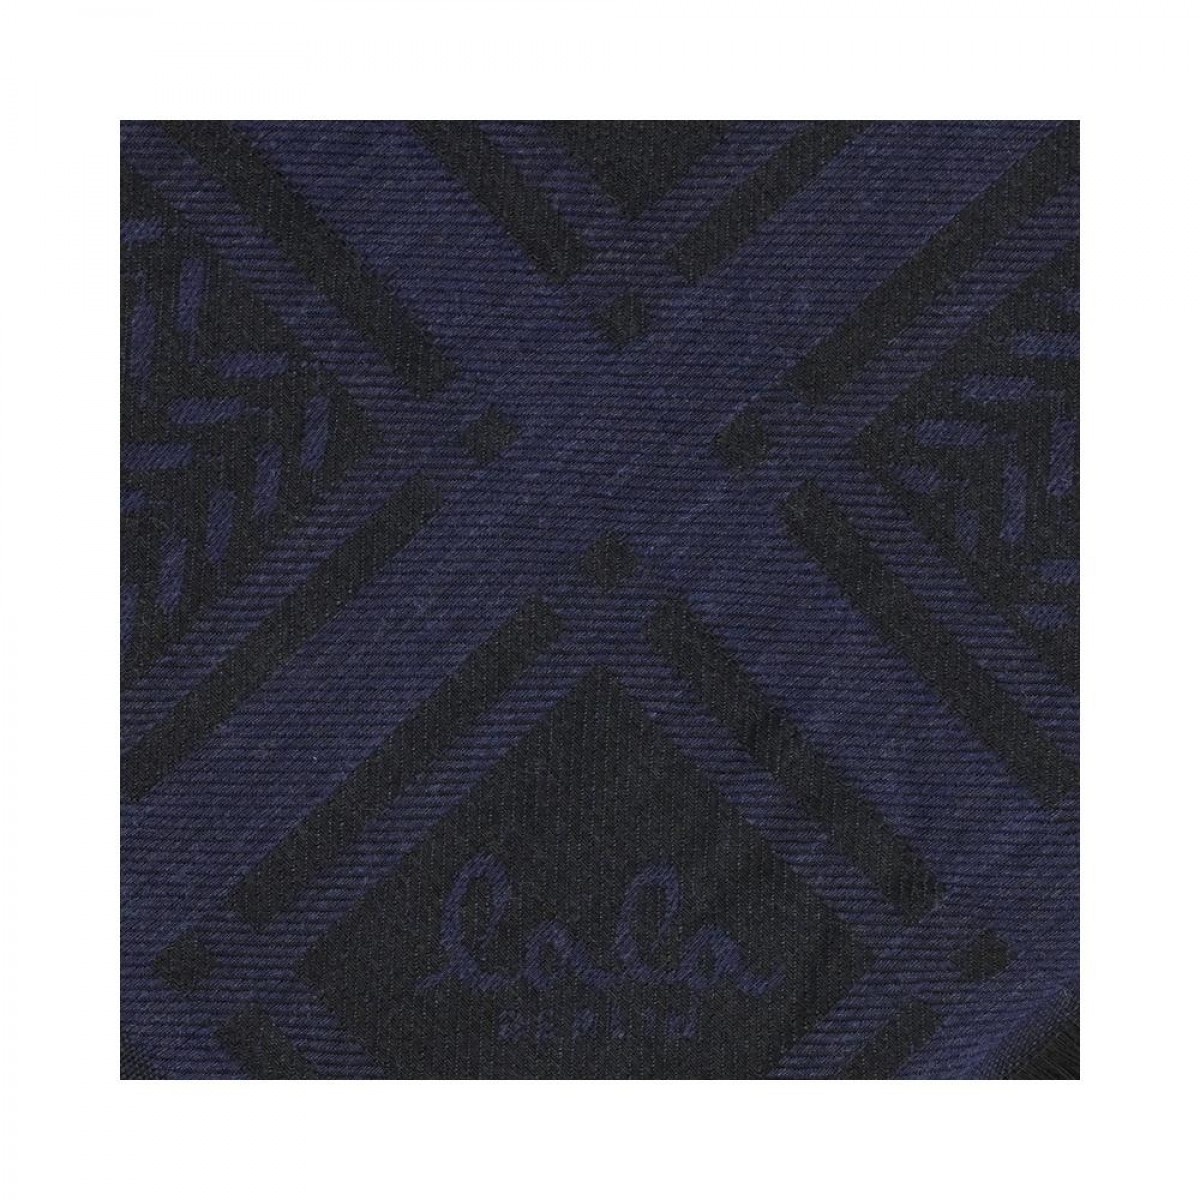 scarf aeryn - blue - print